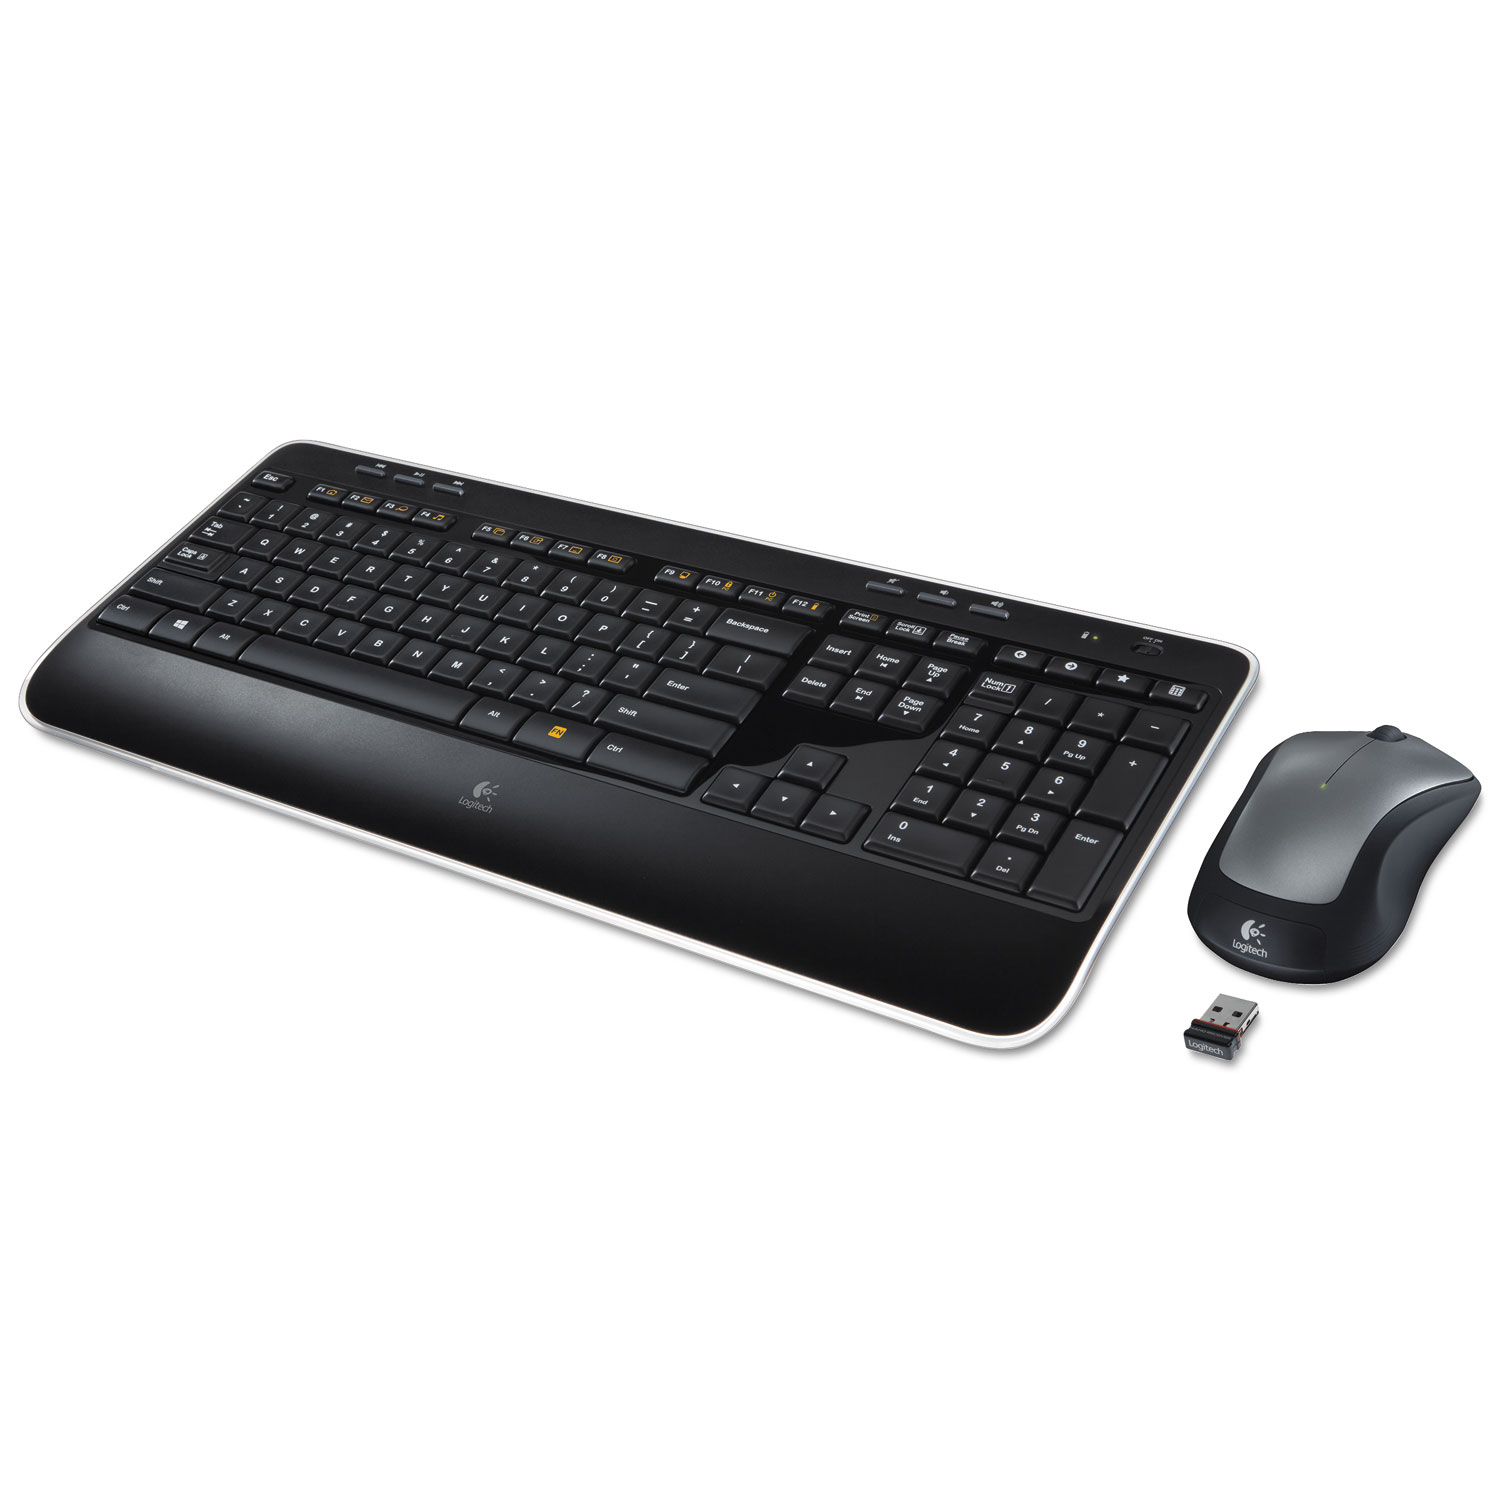 MK520 Wireless Keyboard + Mouse Combo, 2.4 GHz Frequency/30 ft Wireless Range, Black